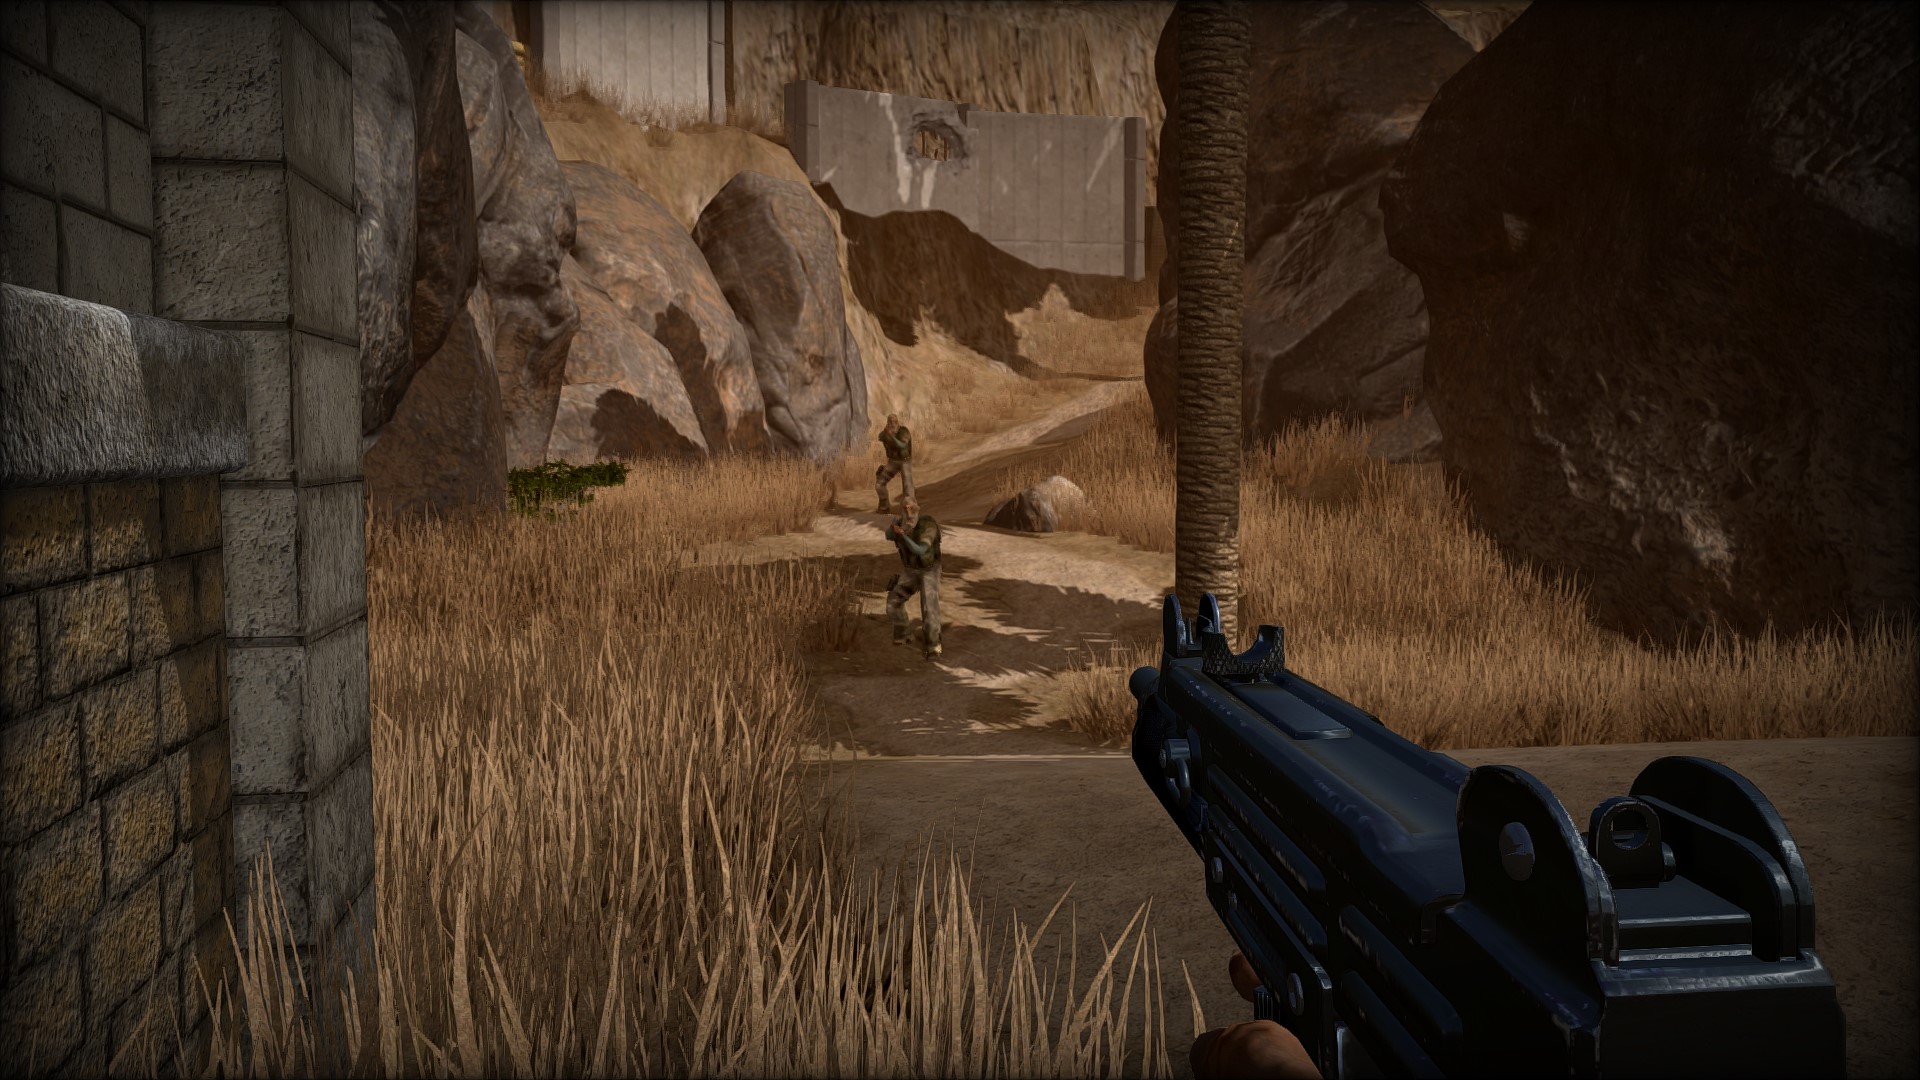 GameGuru screenshot